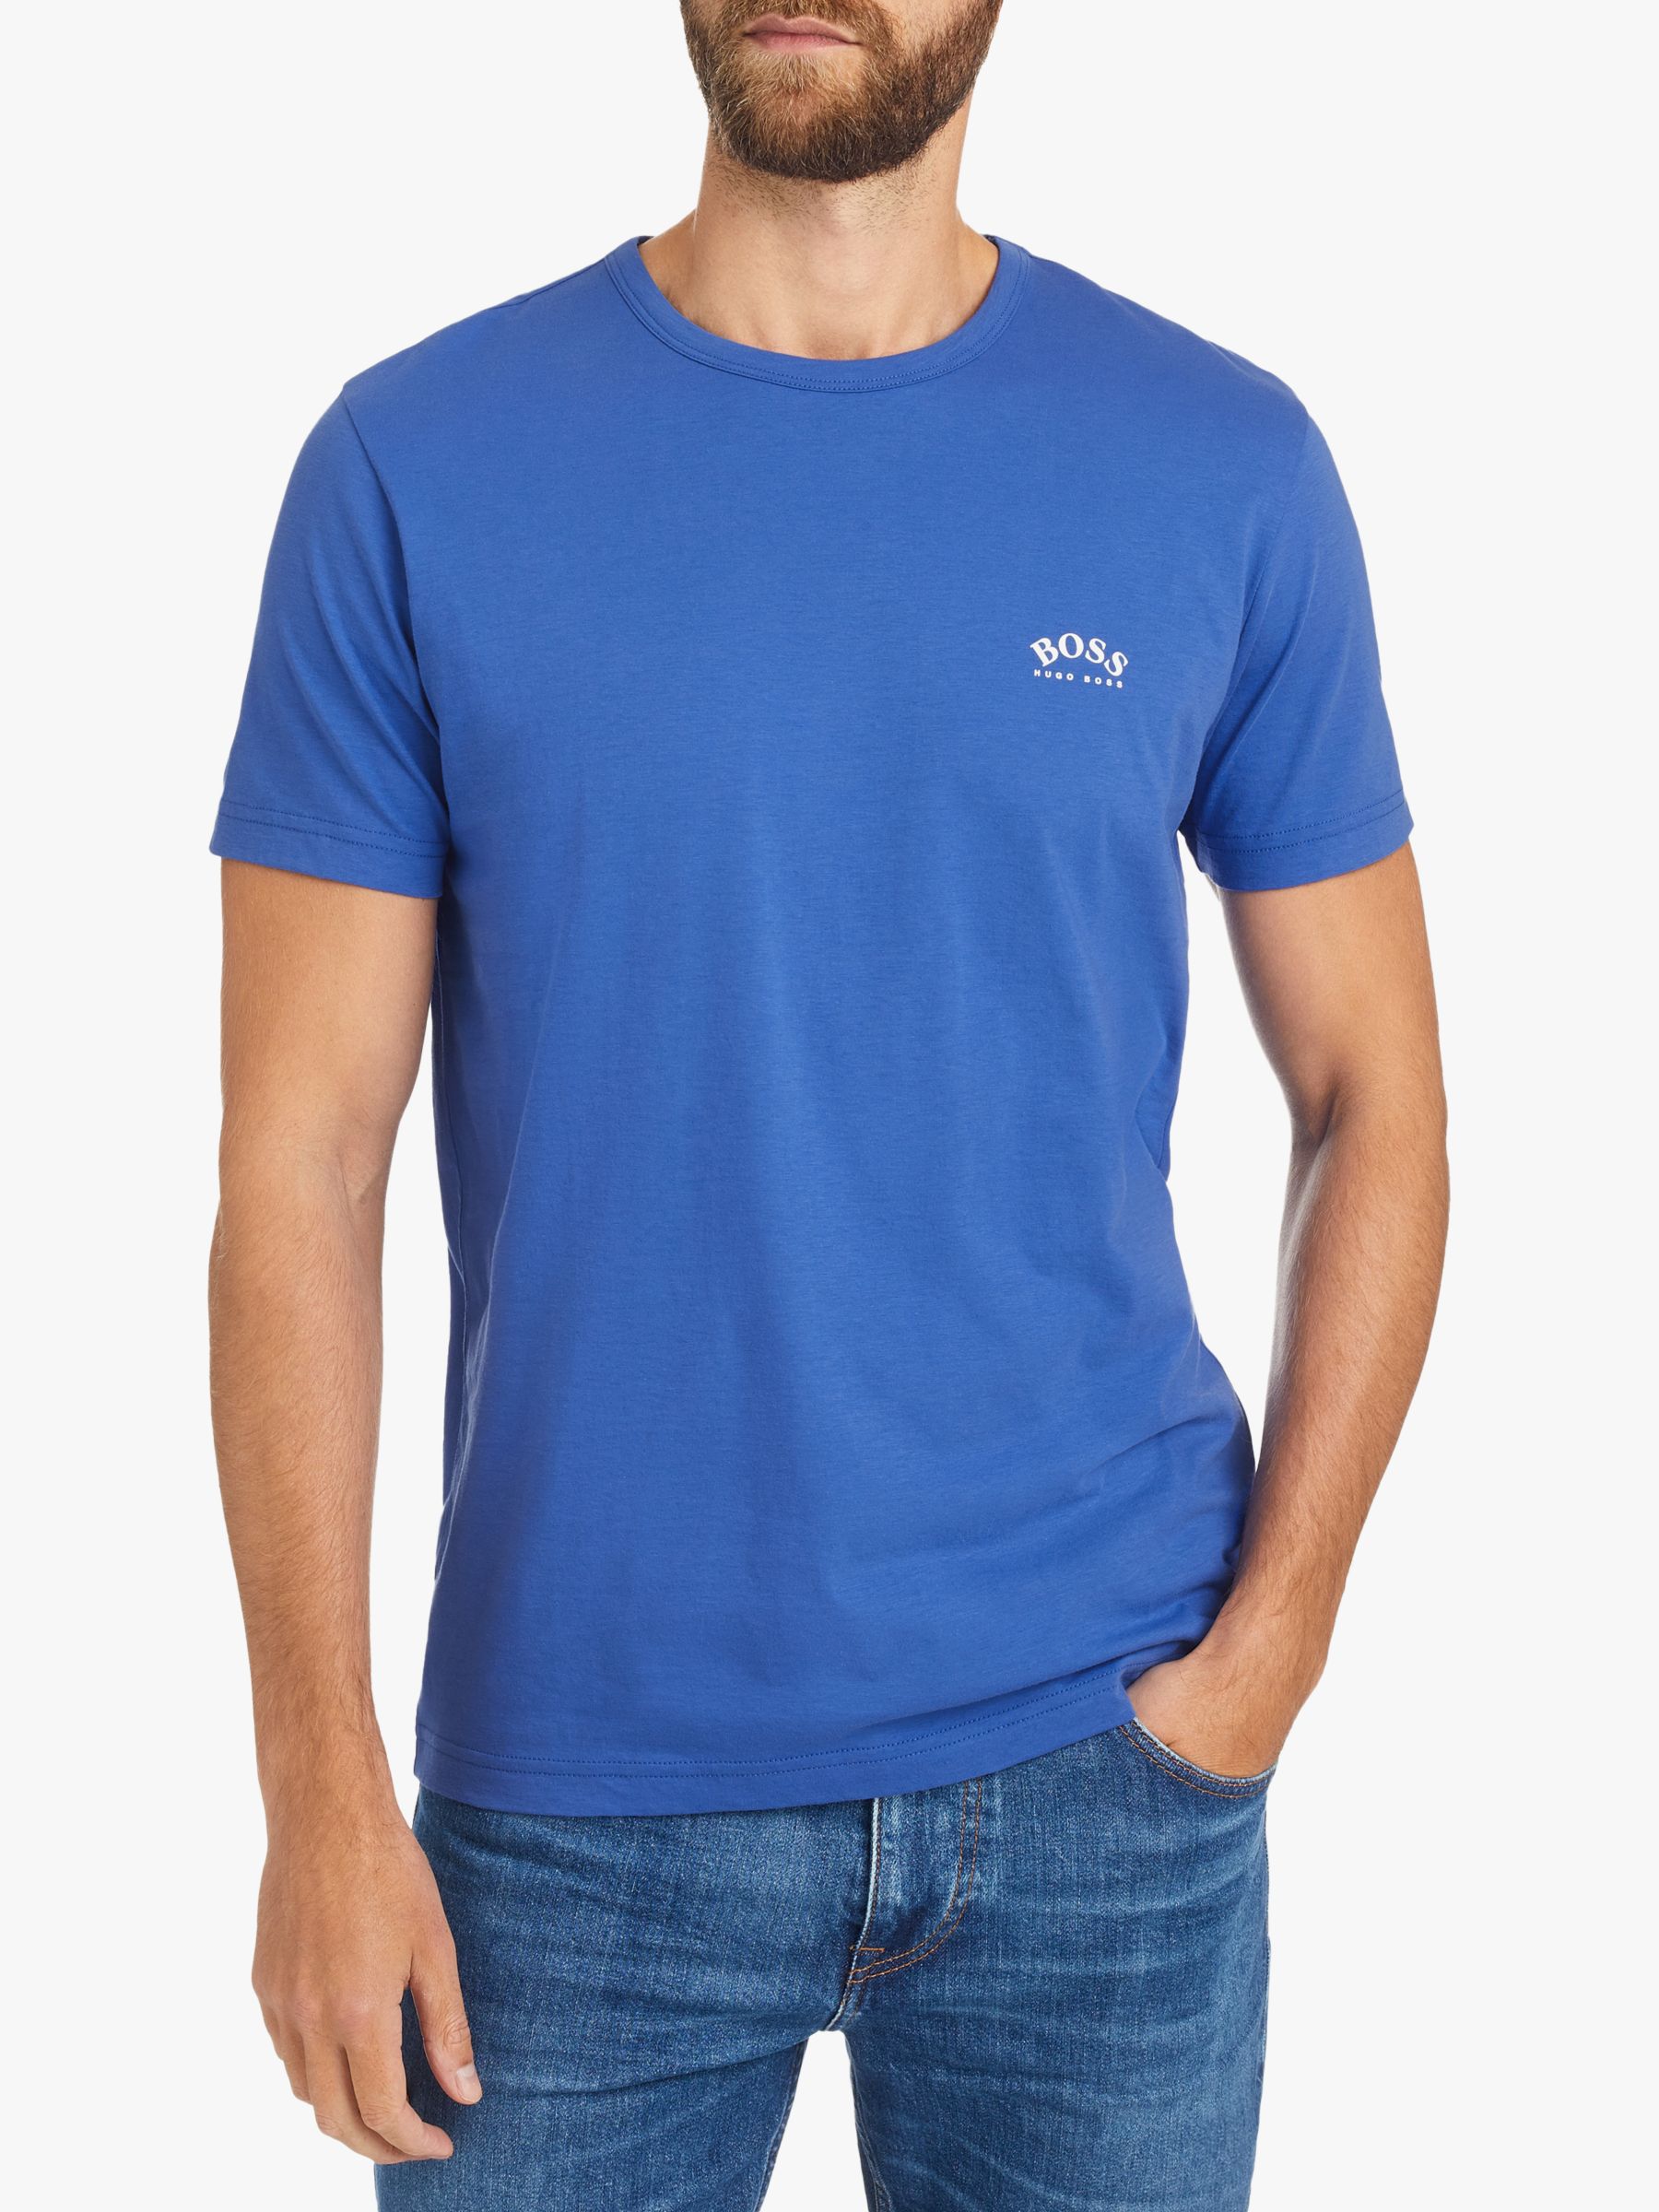 BOSS Curved Logo T-Shirt, Blue